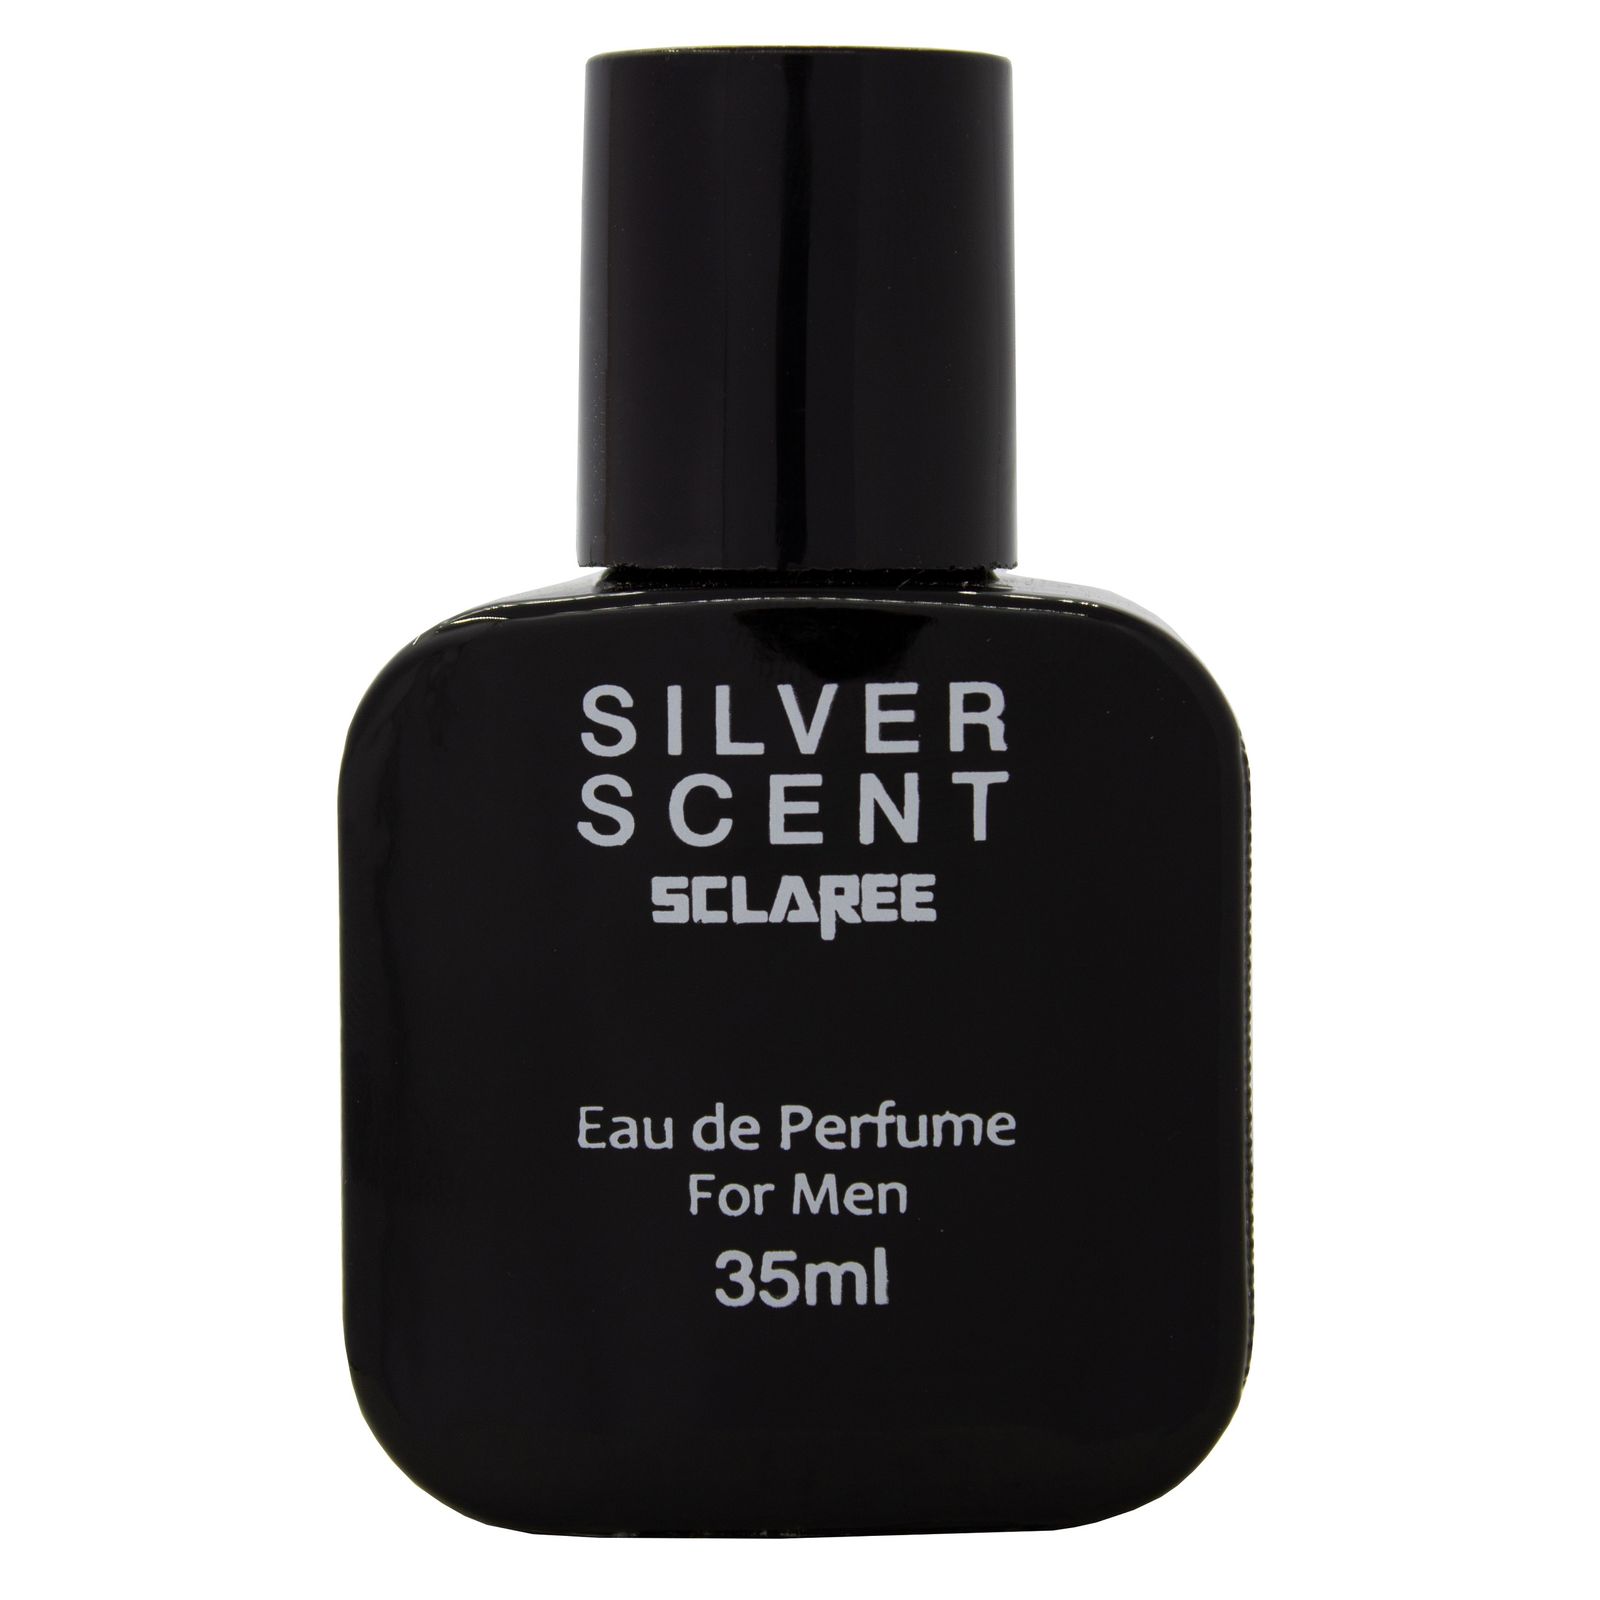  عطر جیبی مردانه اسکلاره مدل  Silver scent حجم 35 میلی لیتر مجموعه دو عددی  -  - 2